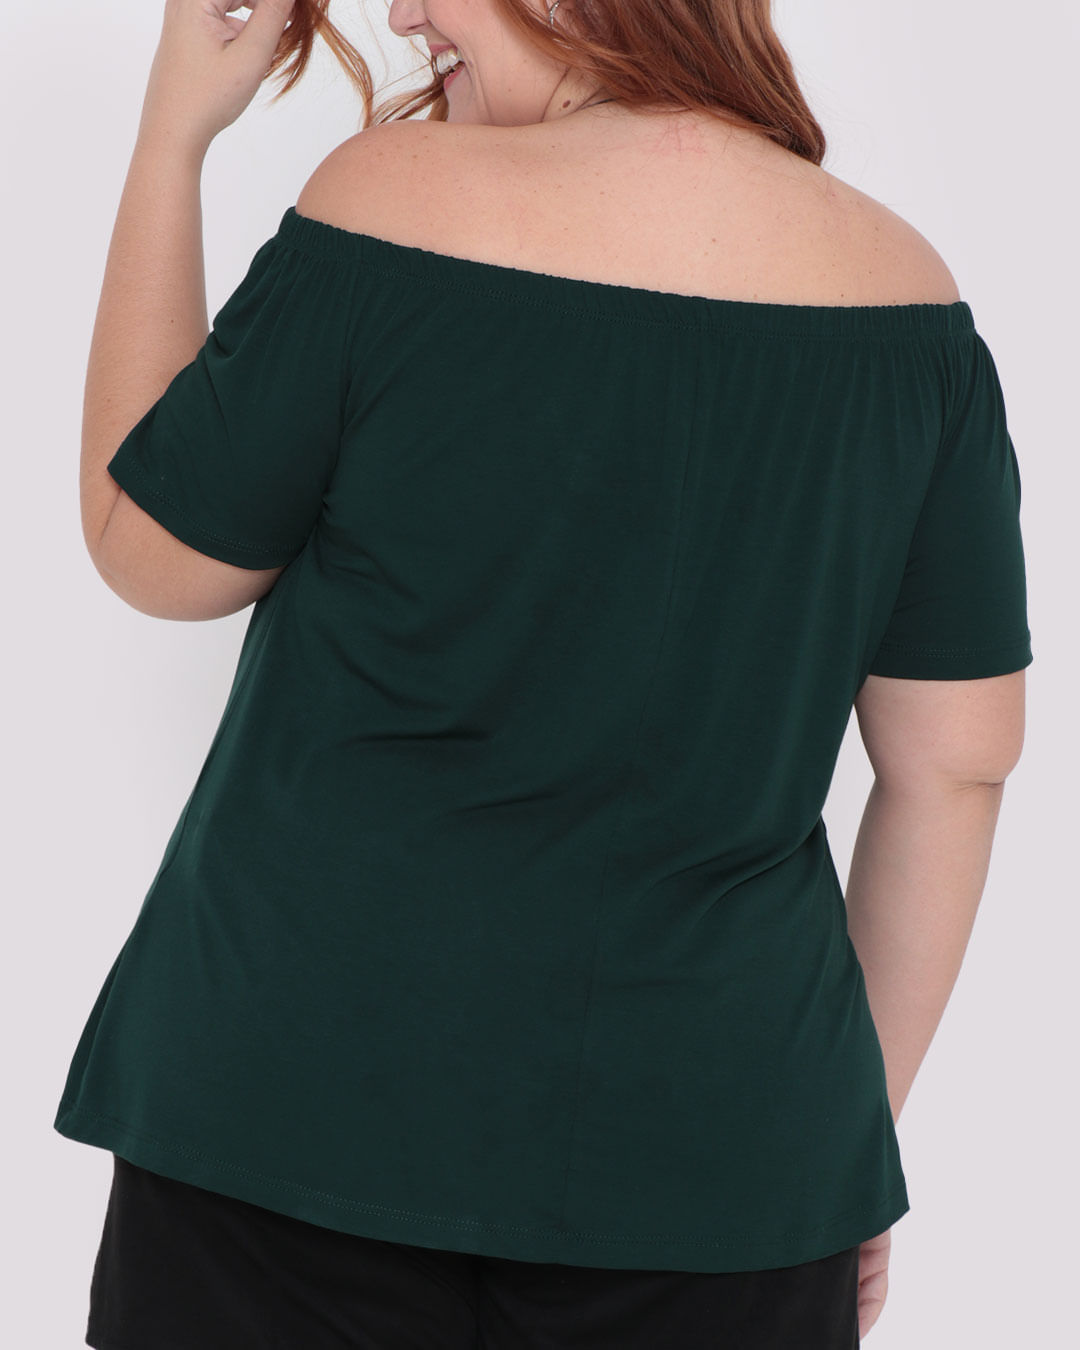 Blusa-Feminina-Plus-Size-Ciganinha-Verde-Escuro